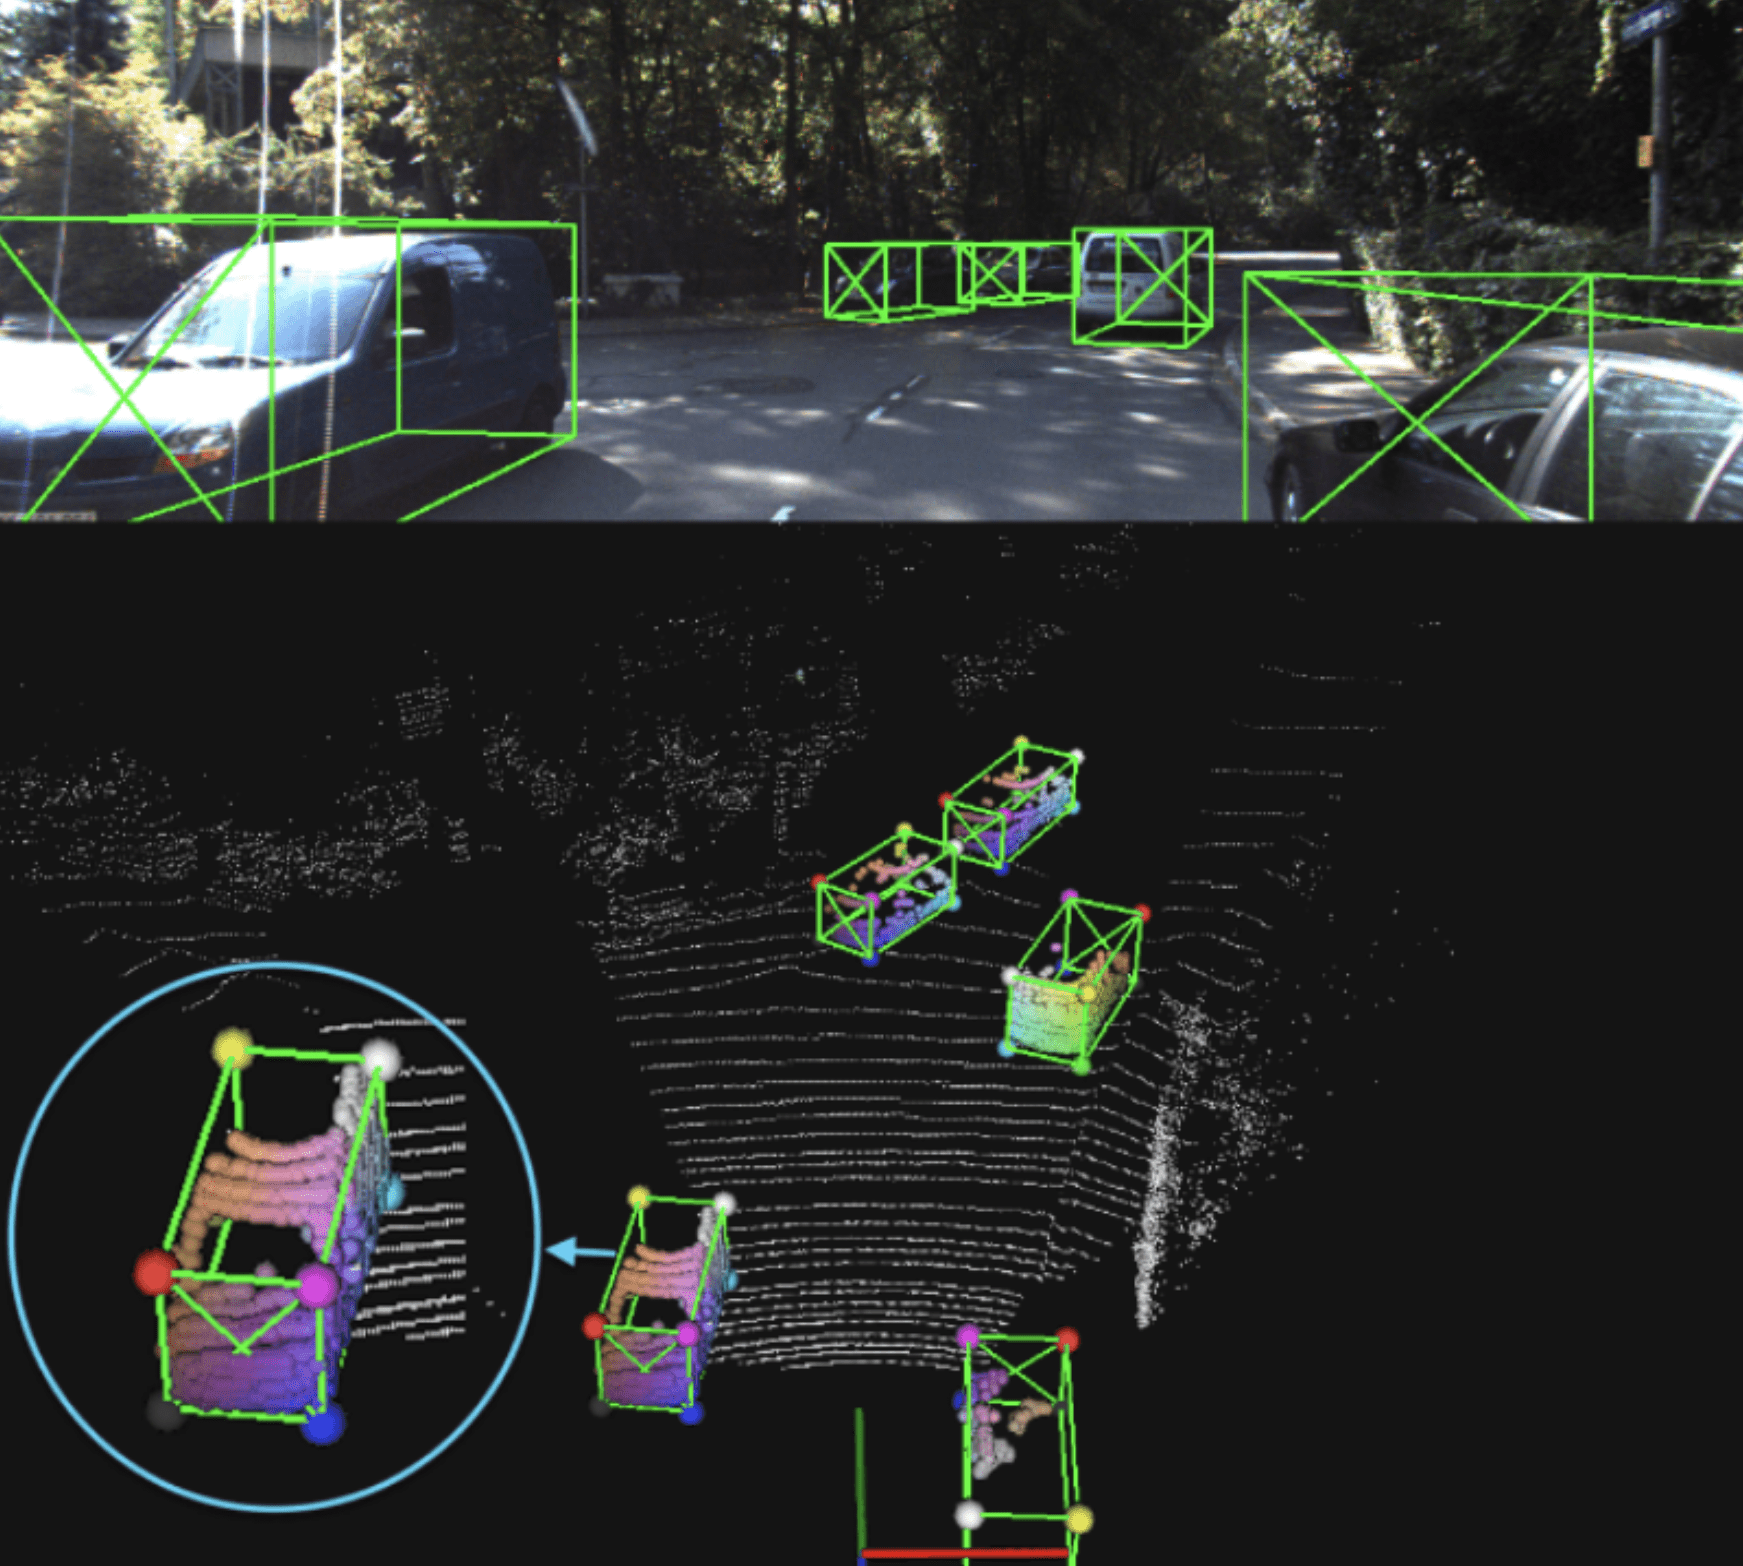 3D meets AI - Autonomous driving